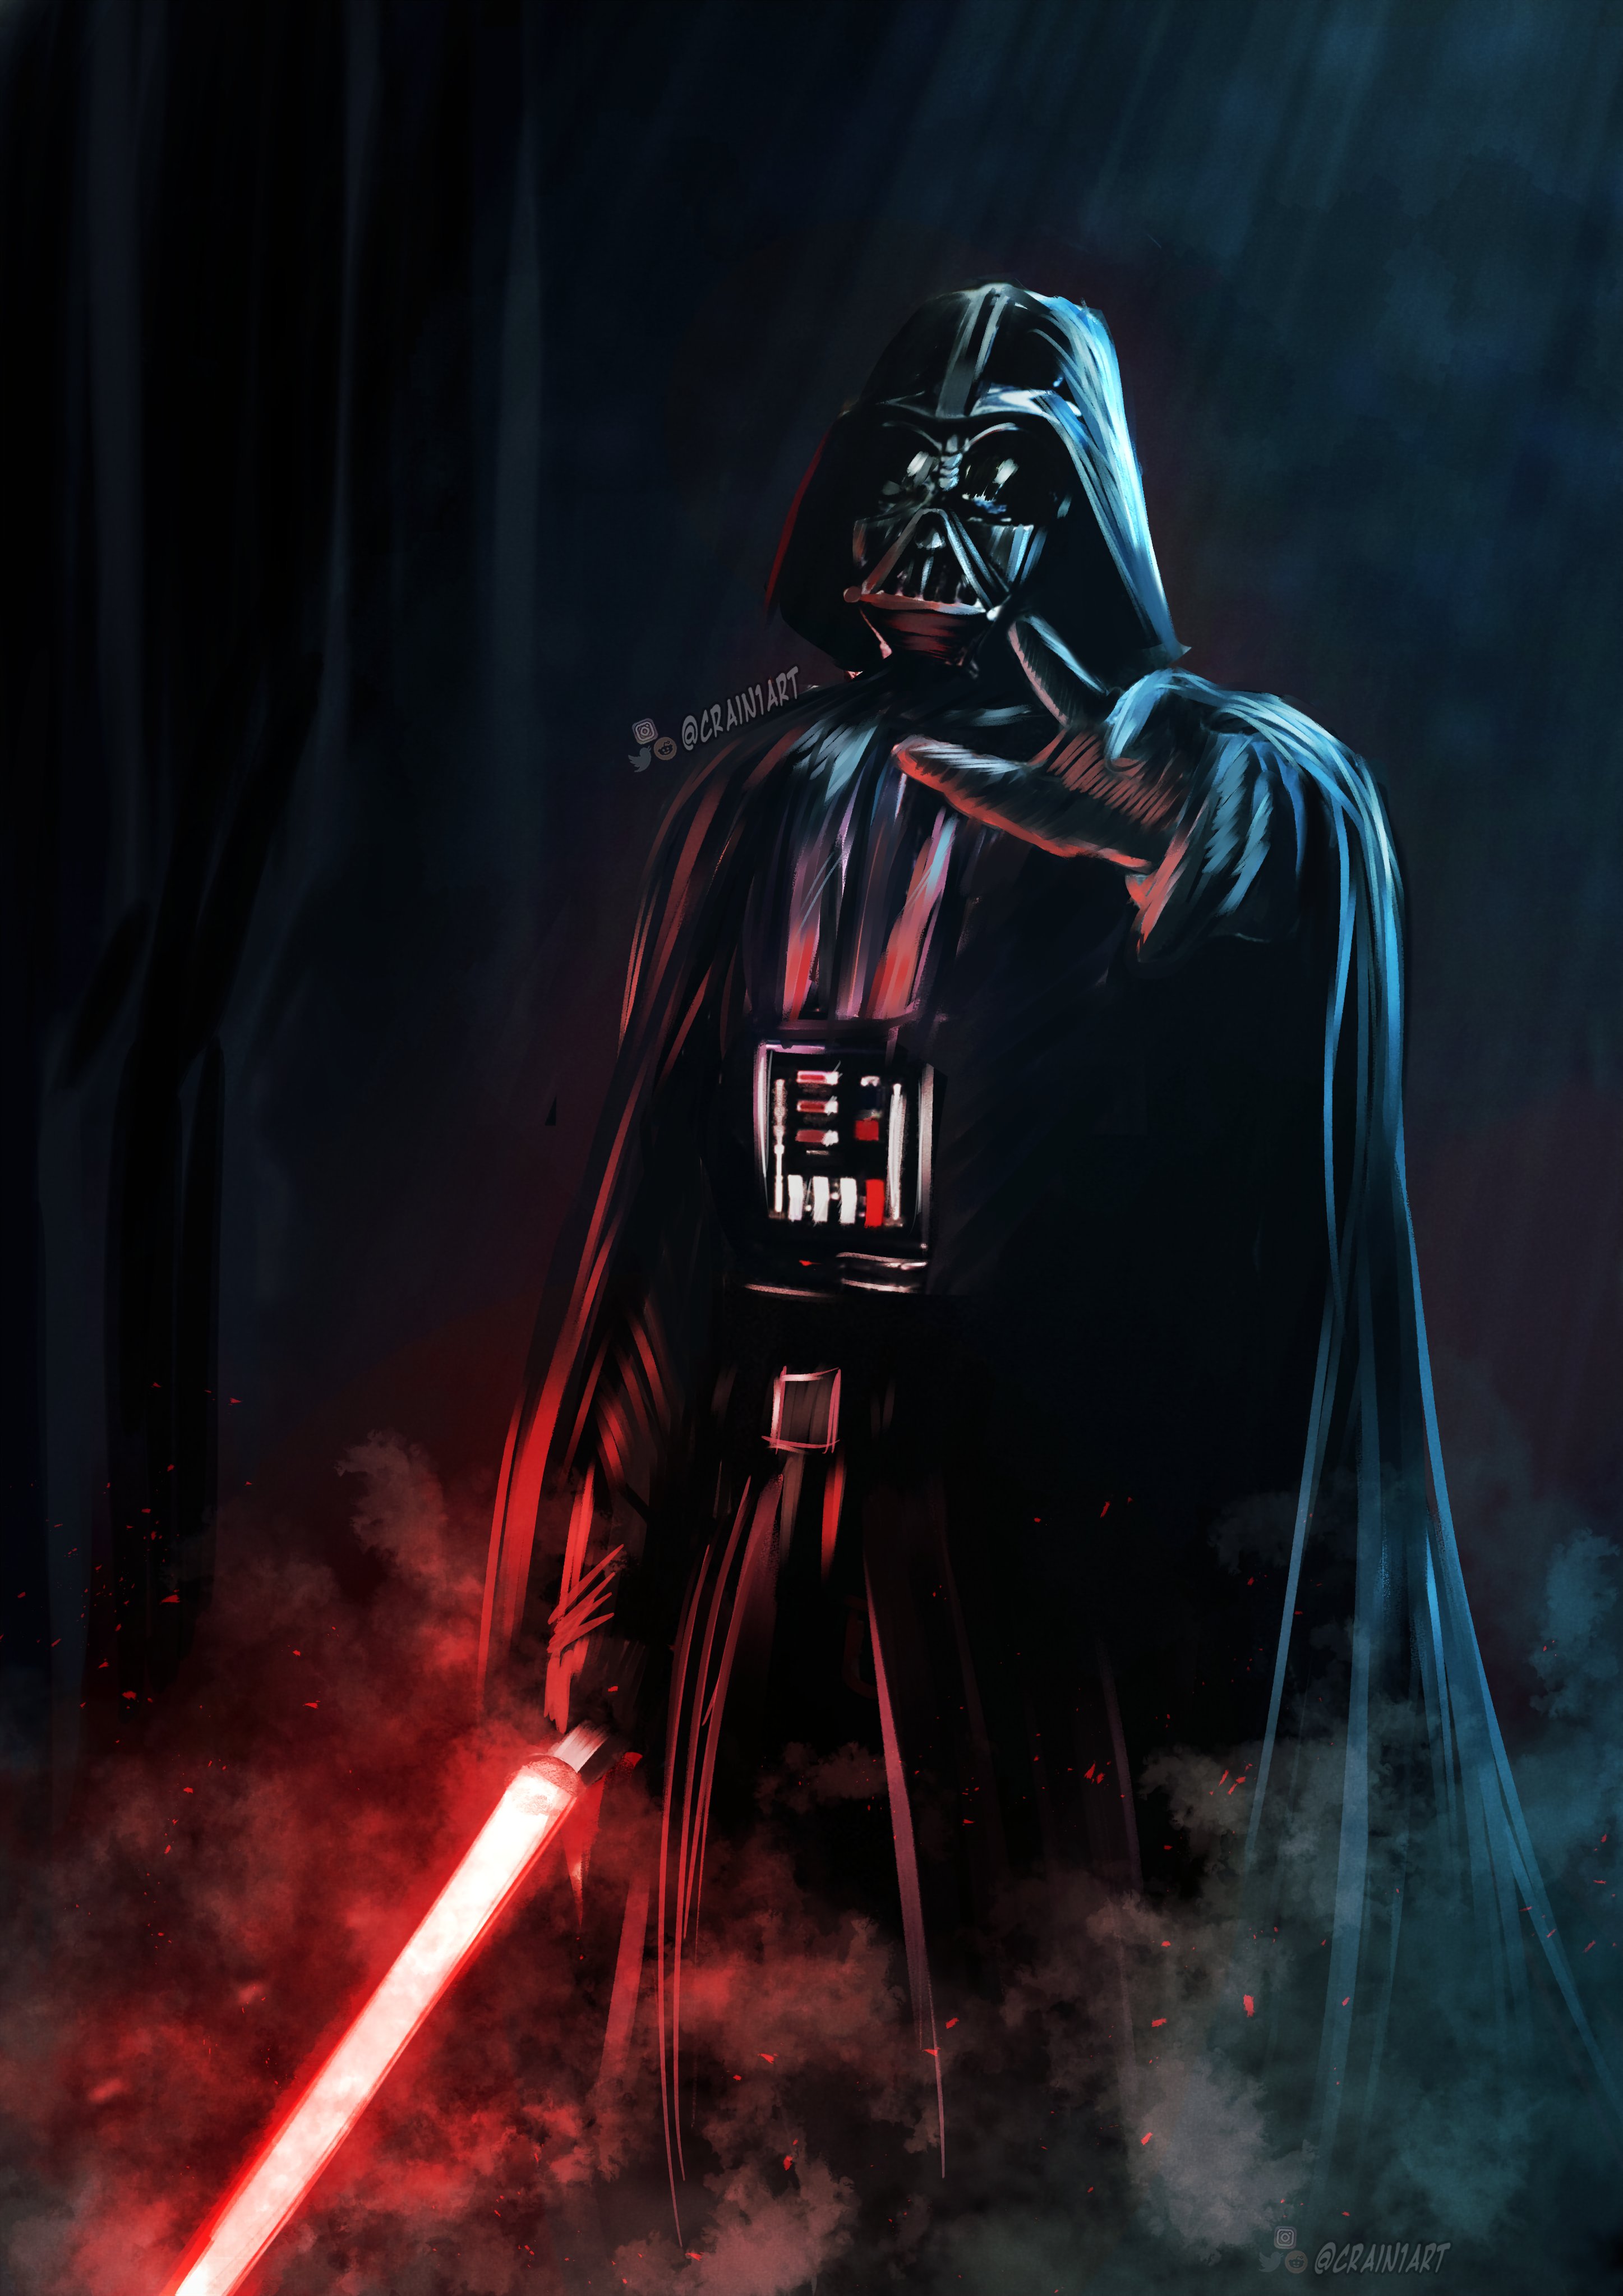 Defecte Gevangene Eerlijk Crain Art on Twitter: "Darth Vader - FanArt #StarWars #Darthvader #Darkside  https://t.co/teSYgenZ0E" / Twitter